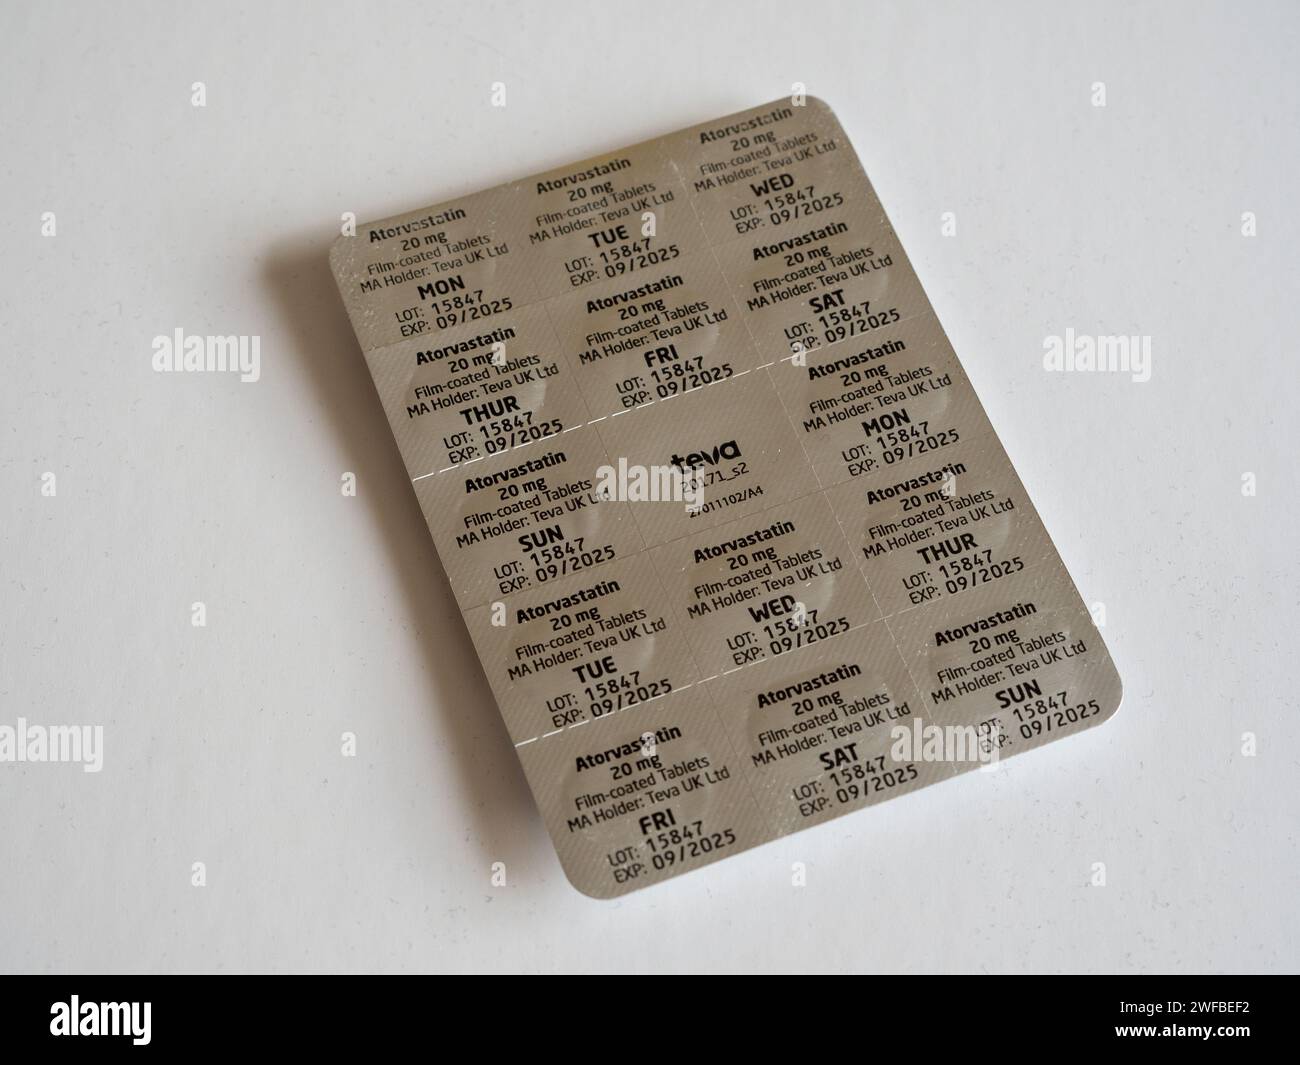 Photographie d'un paquet de comprimés d'atorvastatine - statines orales prescrites pour abaisser le cholestérol. Banque D'Images